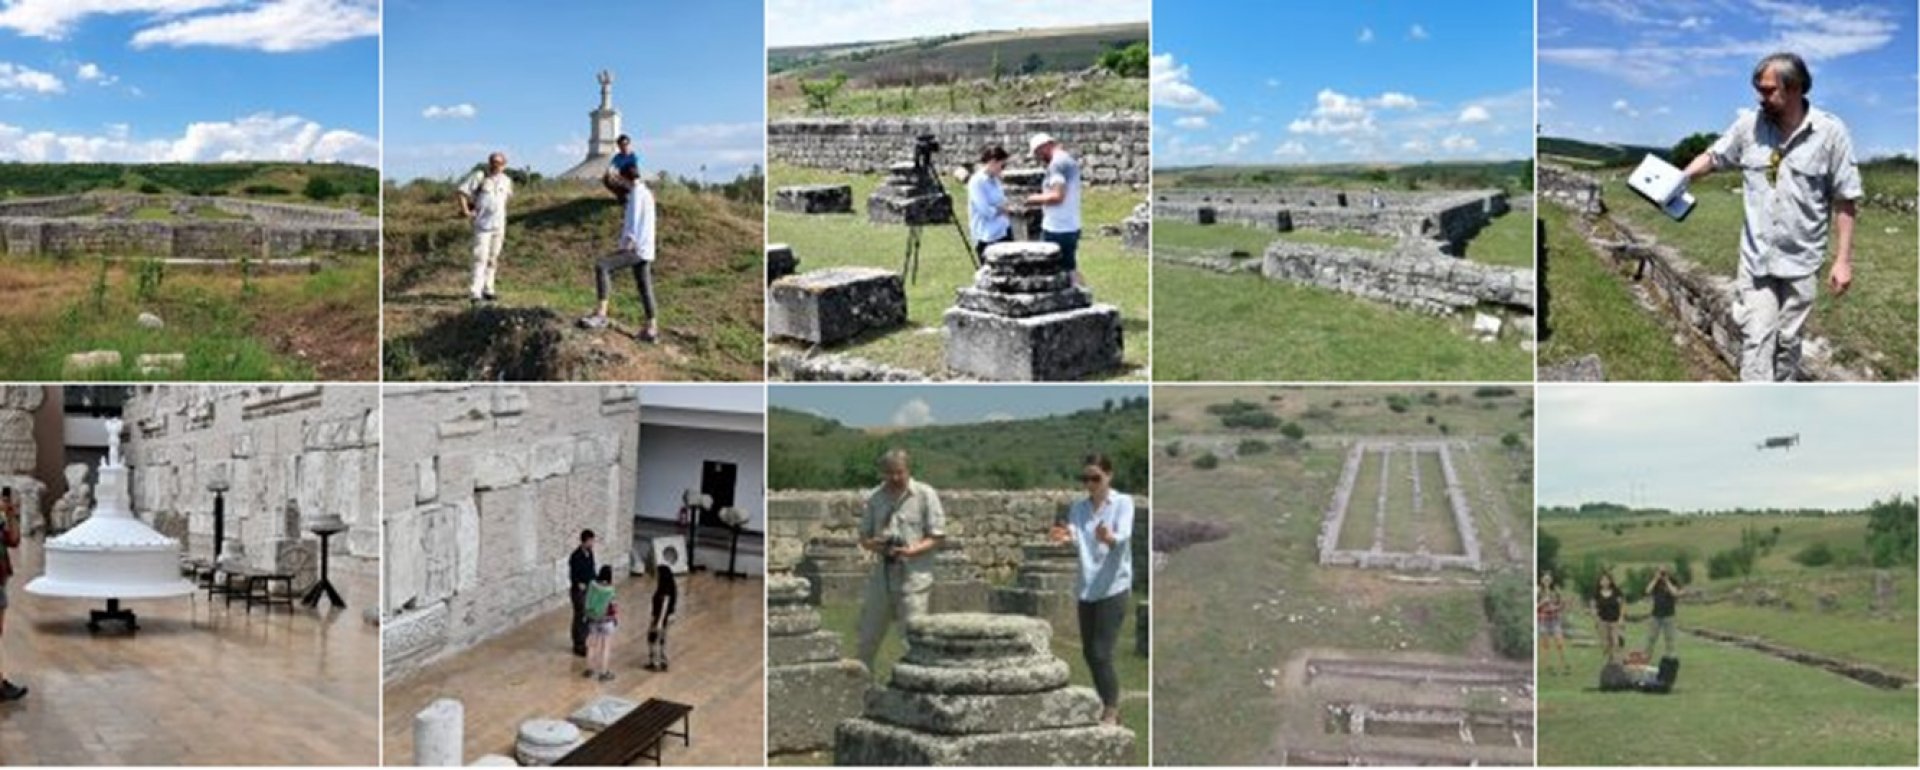 Община Несебър създаде документален филм след научна експедиция по археология  - E-Burgas.com